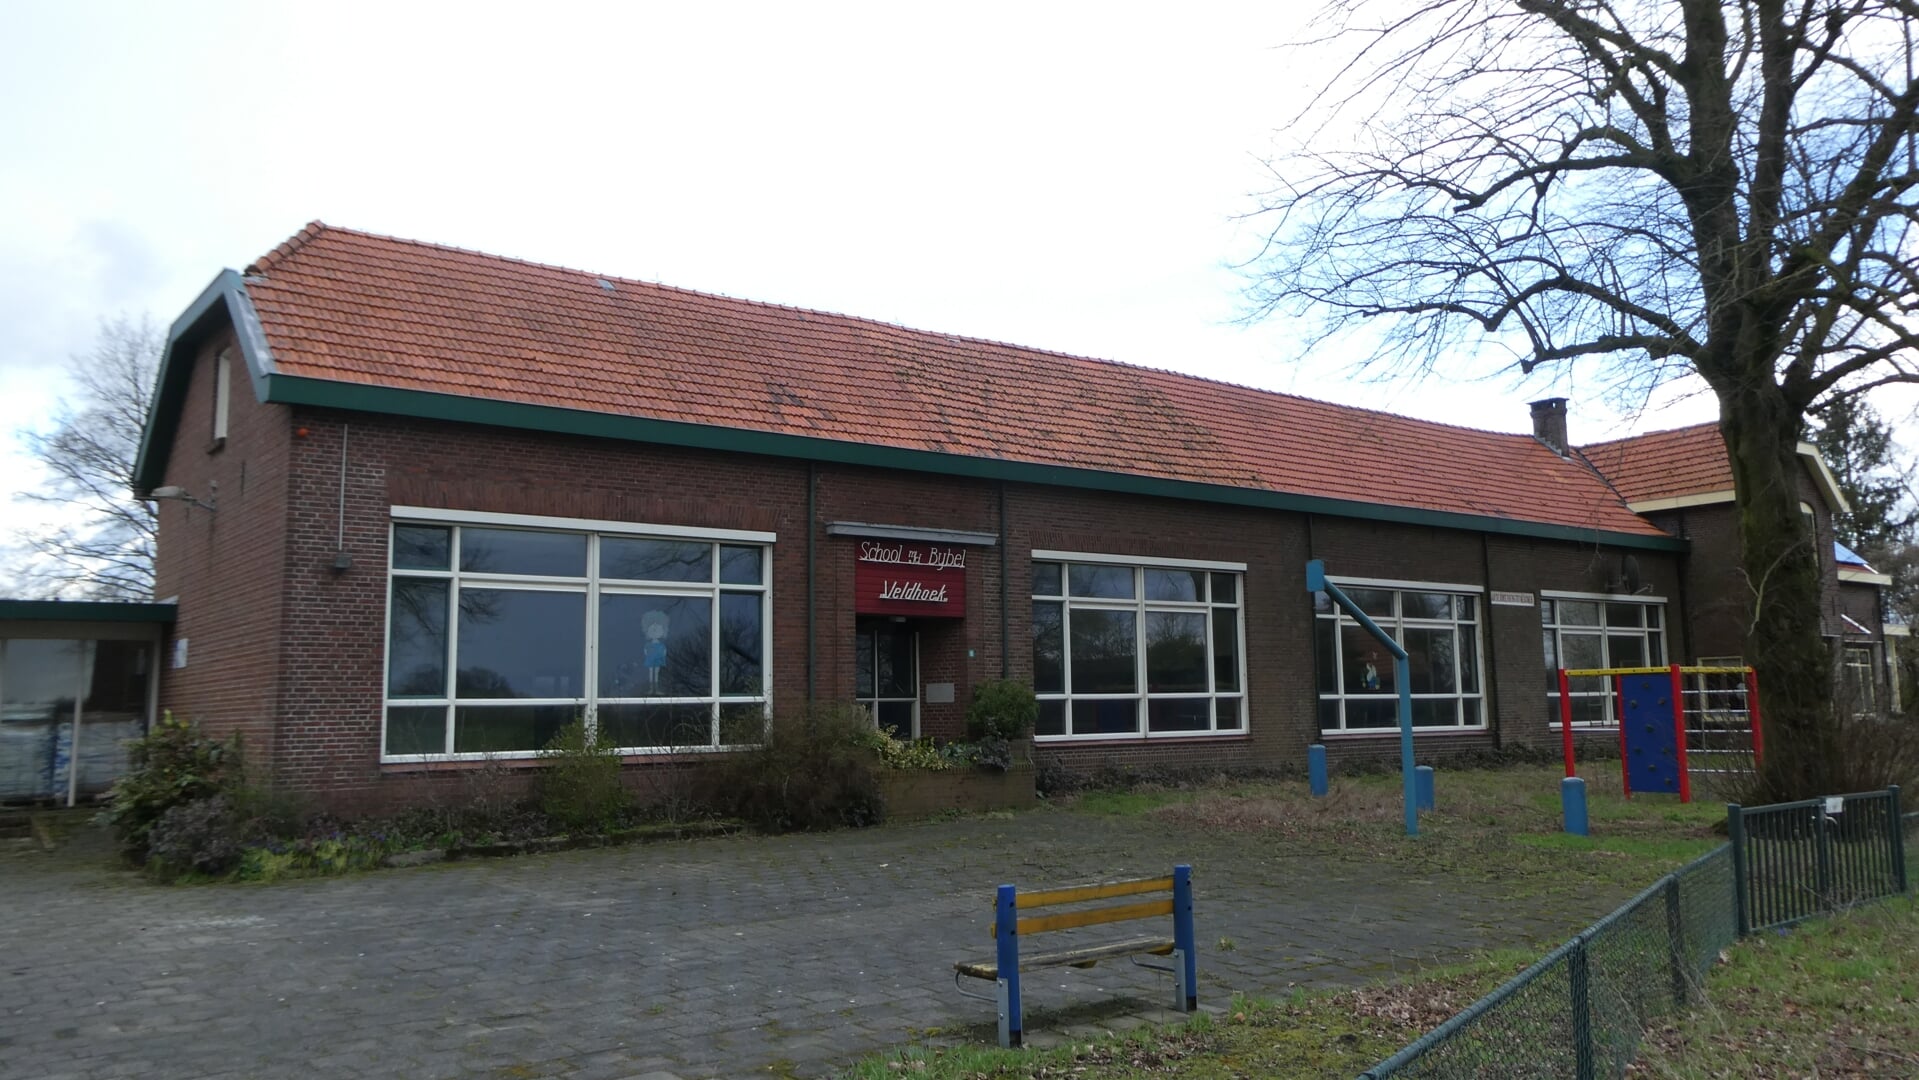 De christelijke Veldhoekschool was tot de sluiting in 2013 96 jaar lang het 'middelpunt' van de buurt. Foto: Jan Hendriksen